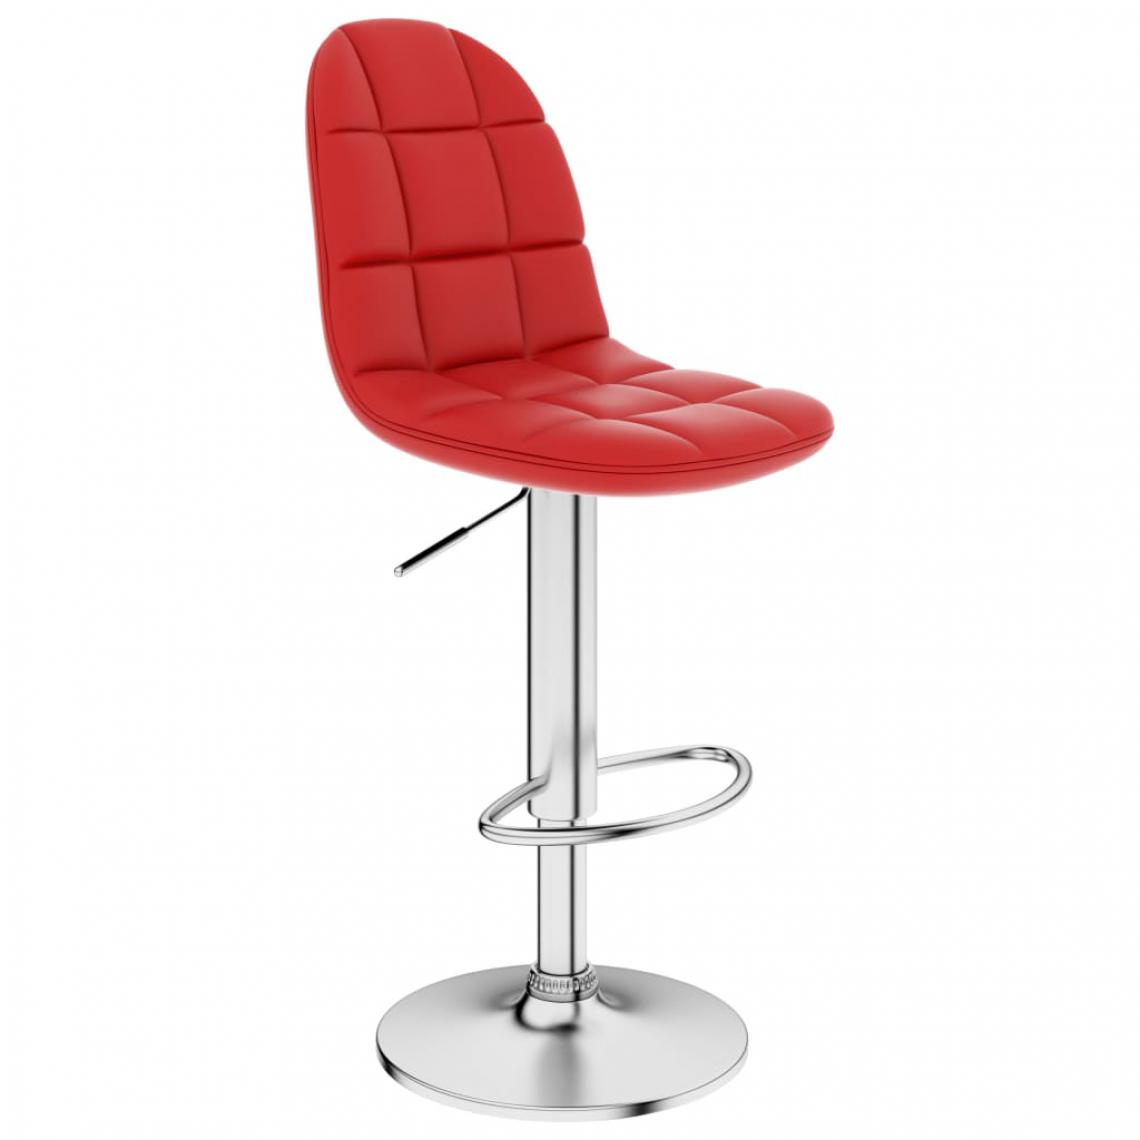 Icaverne - Admirable Fauteuils et chaises categorie Doha Tabouret de bar Rouge bordeaux Similicuir - Tabourets